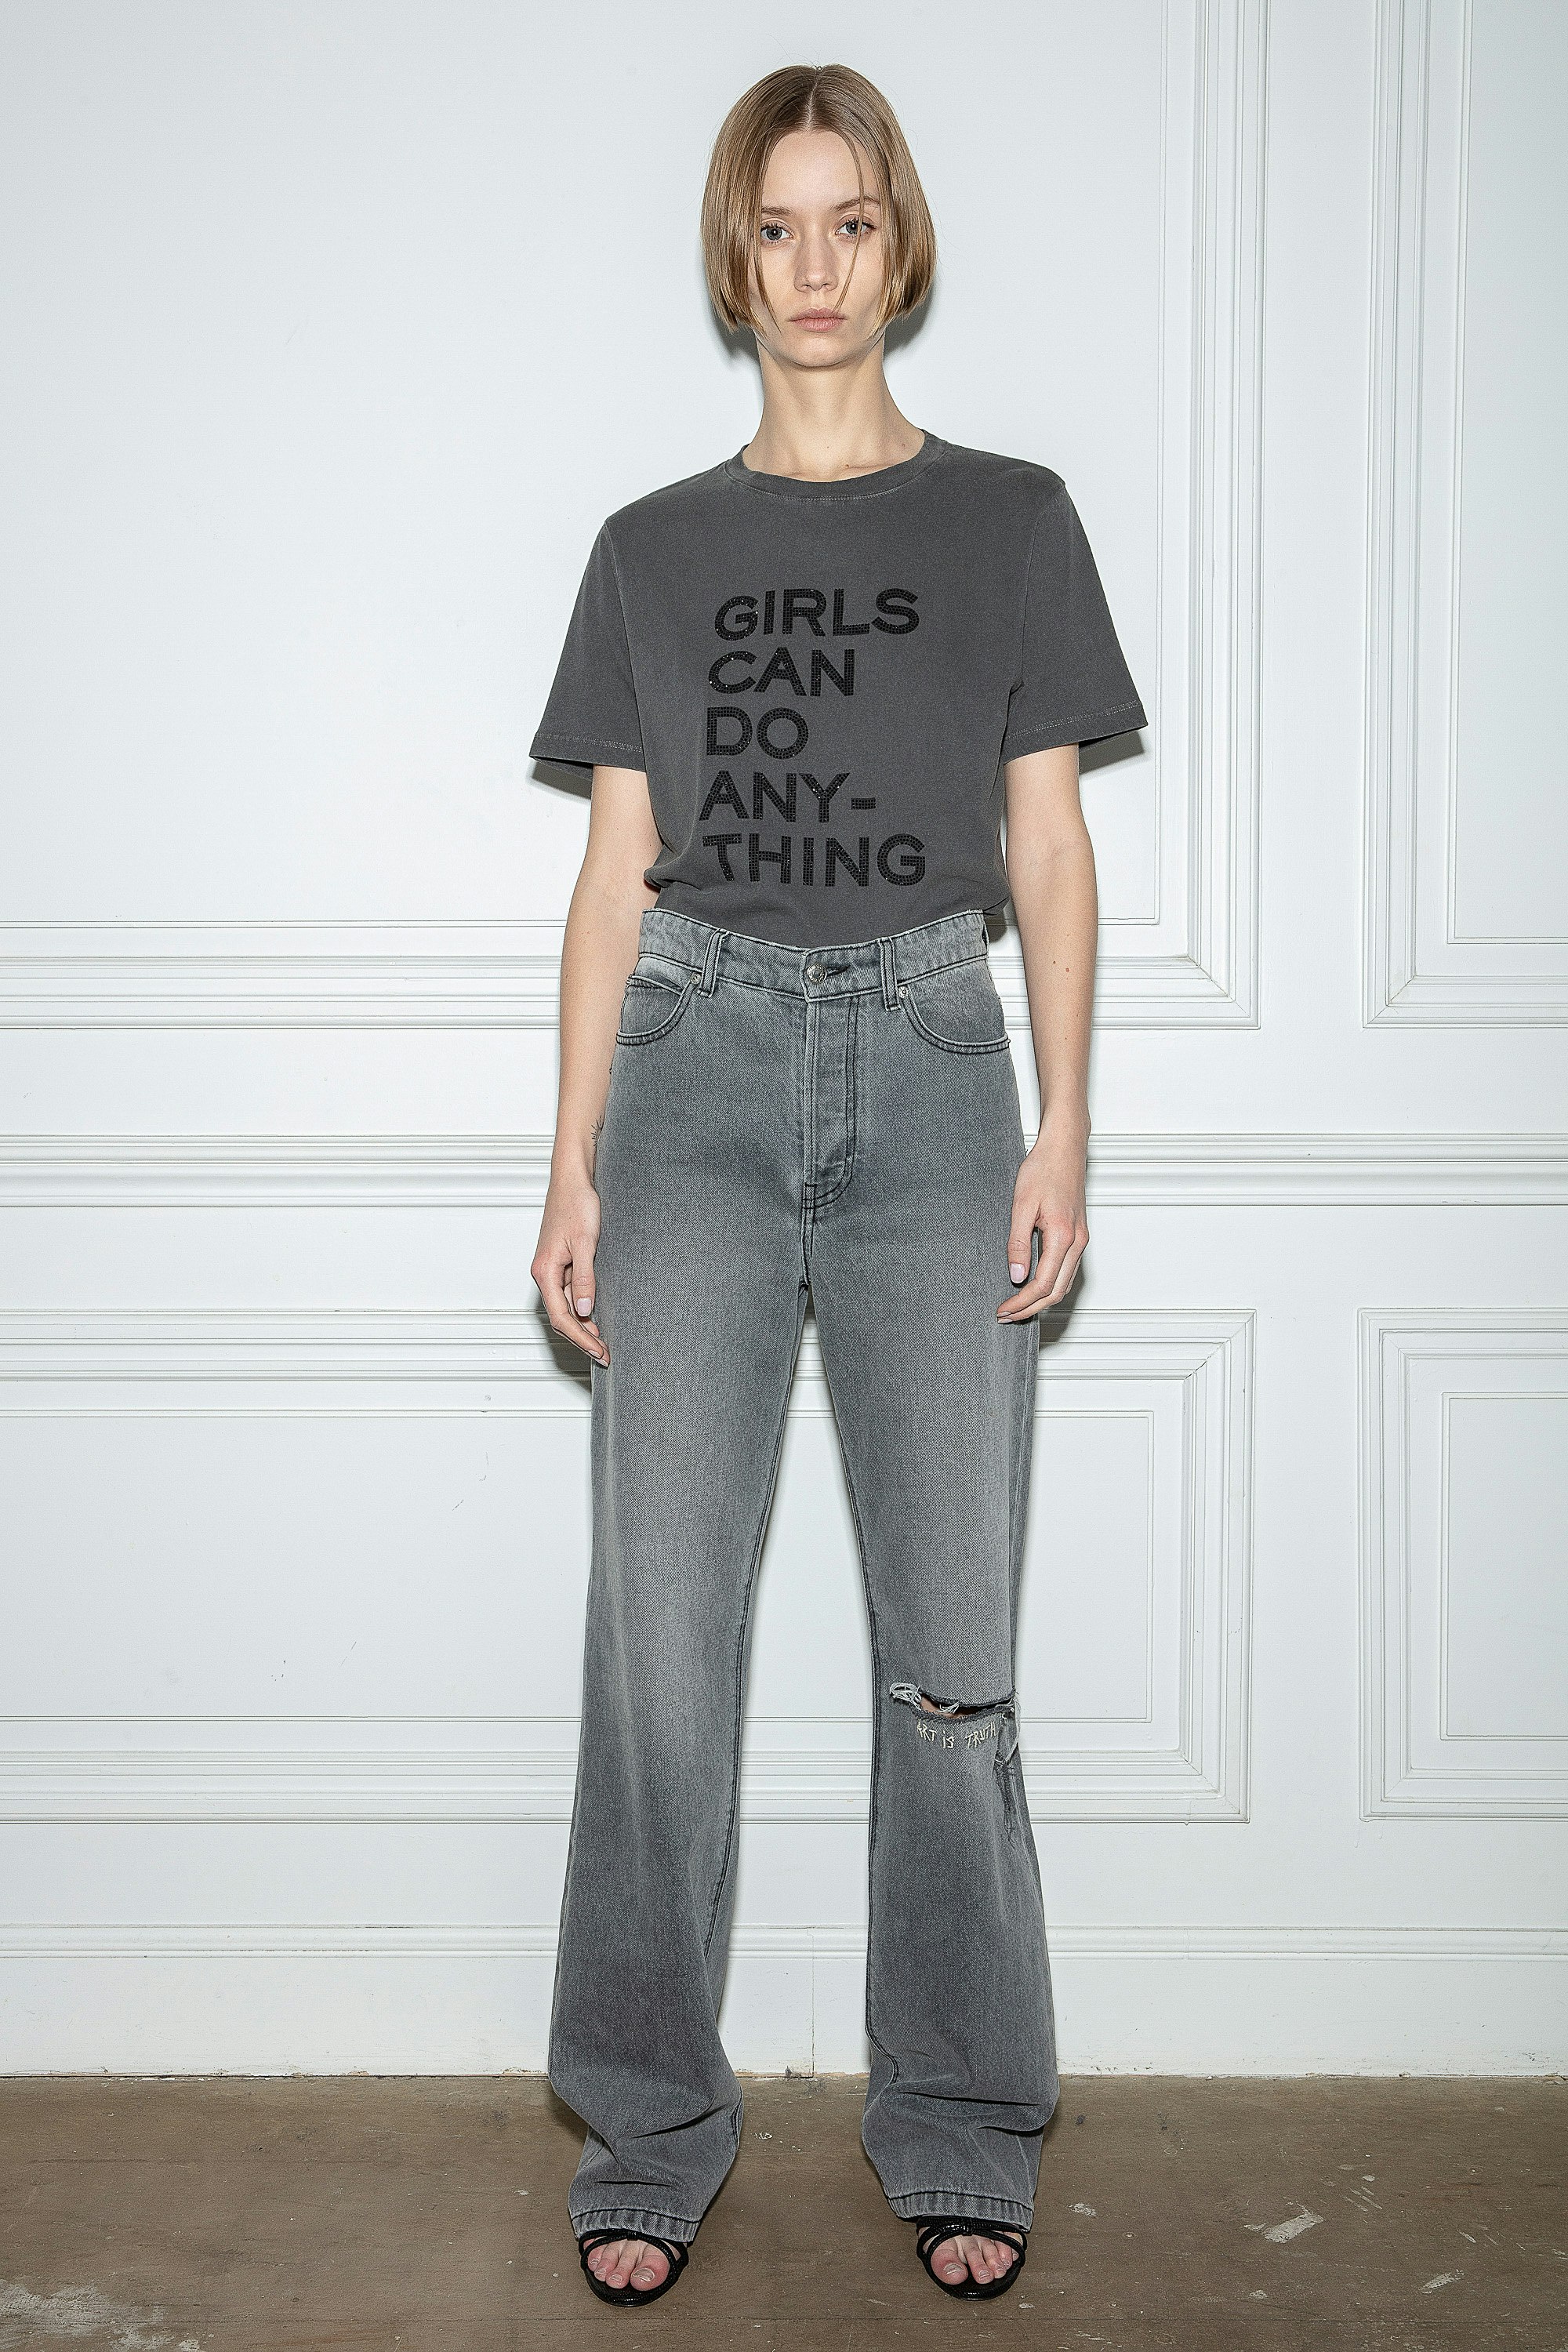 Camiseta Bella Camiseta gris de algodón para mujer con mensaje «Girls can do anything» engastado con strass